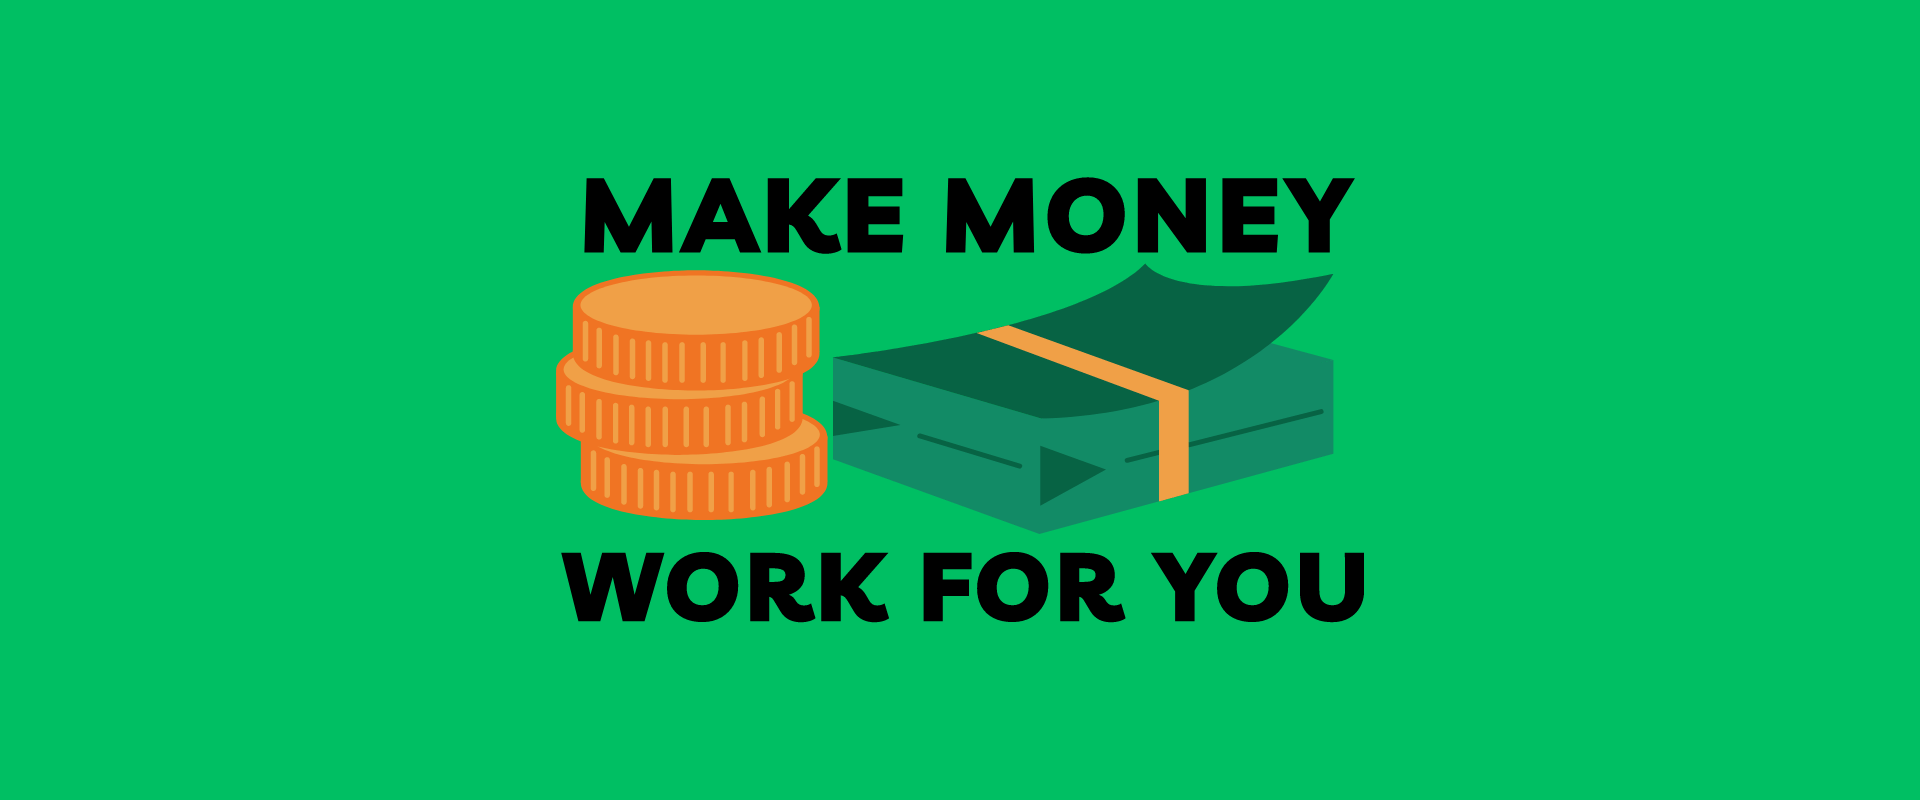 Can You Make Money Through Blogging?